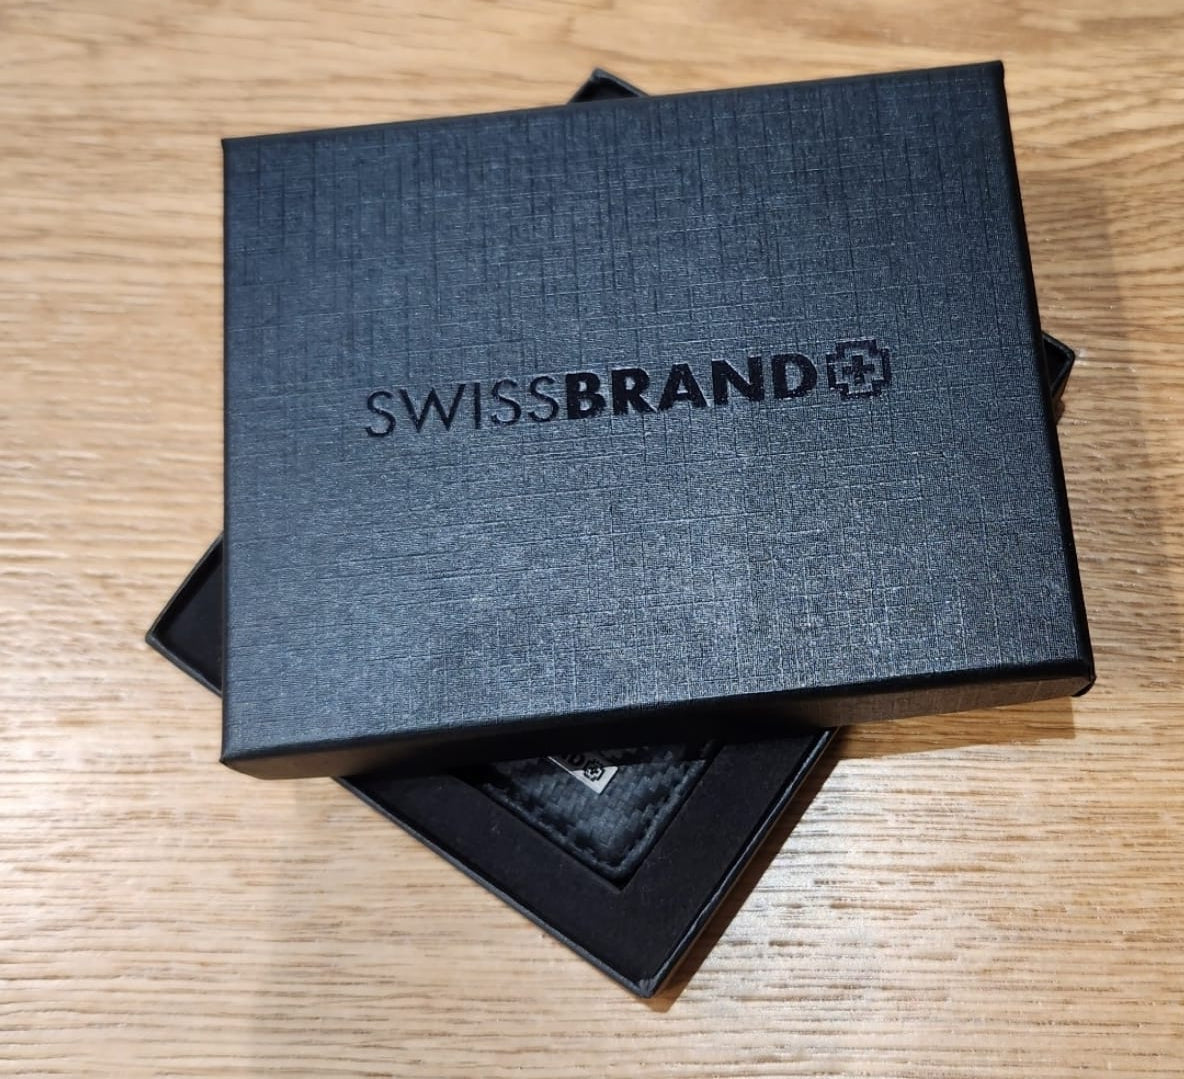 ✮מותג שוויצרי מקורי✮ ארנק עור קליפ מבית המותג SwissBrand דגם Monaco Mini Clip